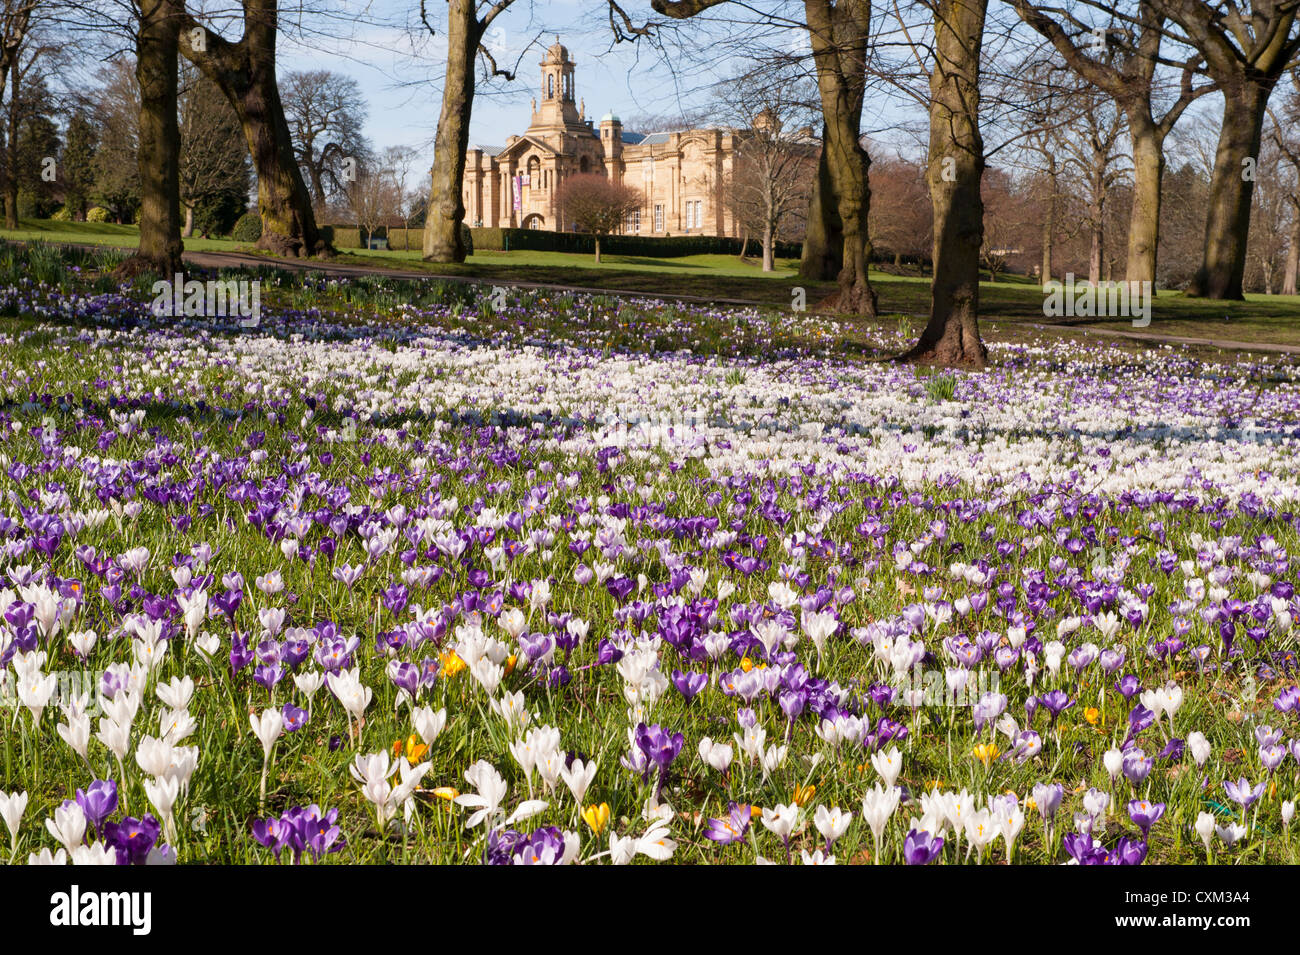 Tapis de magnifiques paysages de printemps colorés sur pelouse par Cartwright Hall Art Gallery (bâtiment historique) - Sunny Lister Park, Bradford, Angleterre, Royaume-Uni. Banque D'Images